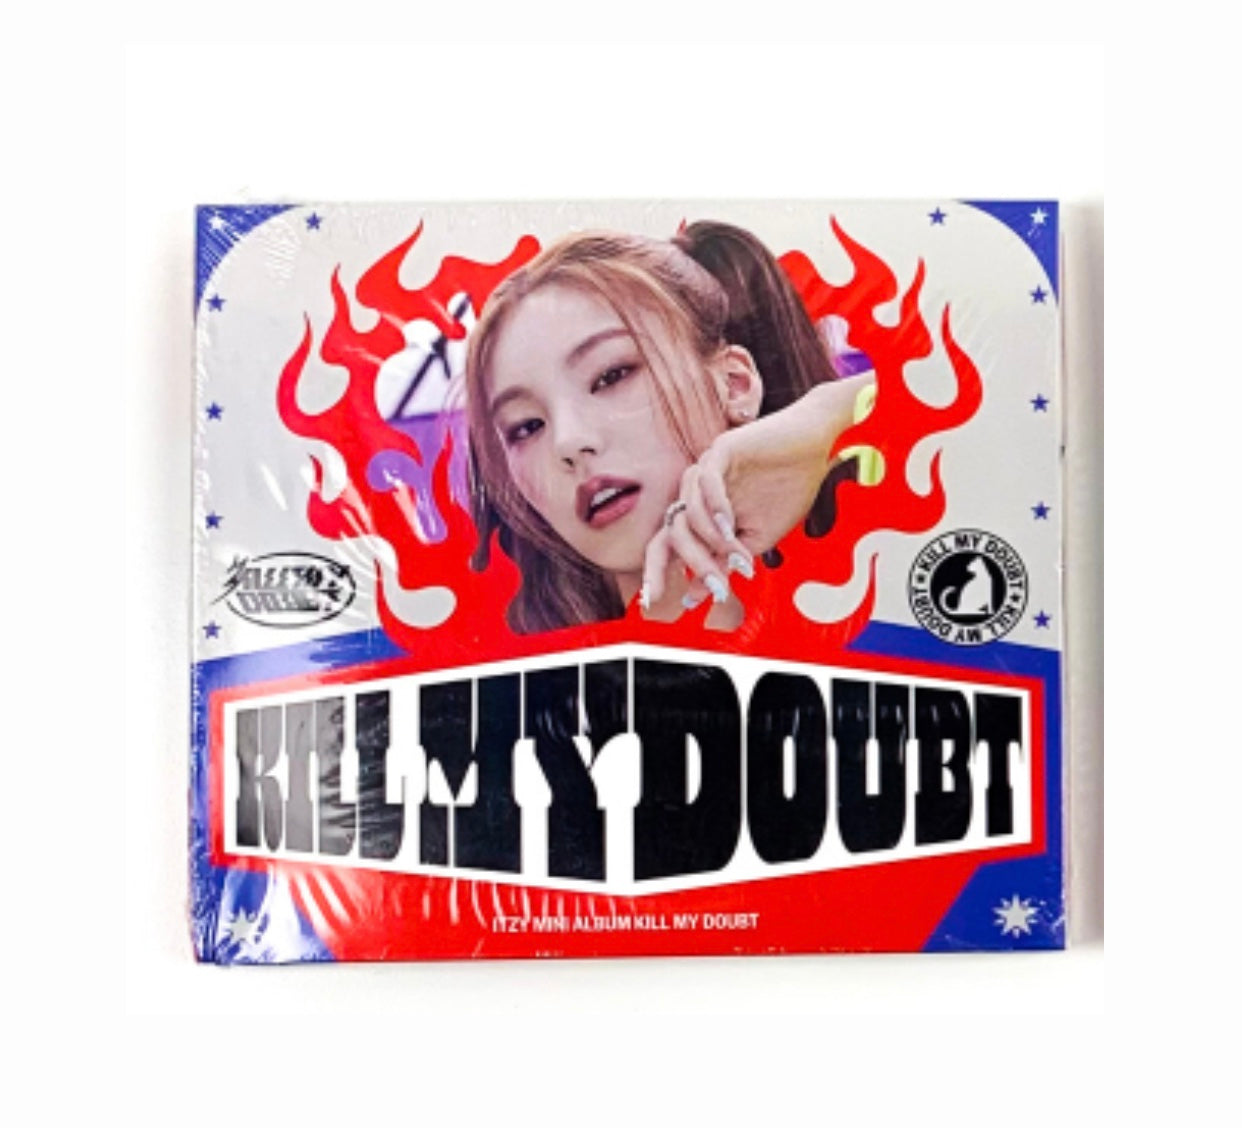 [POB JYP] Itzy - Kill My Doubt Digipack Edition (Incluye beneficio de Preventa) Yeji ver.